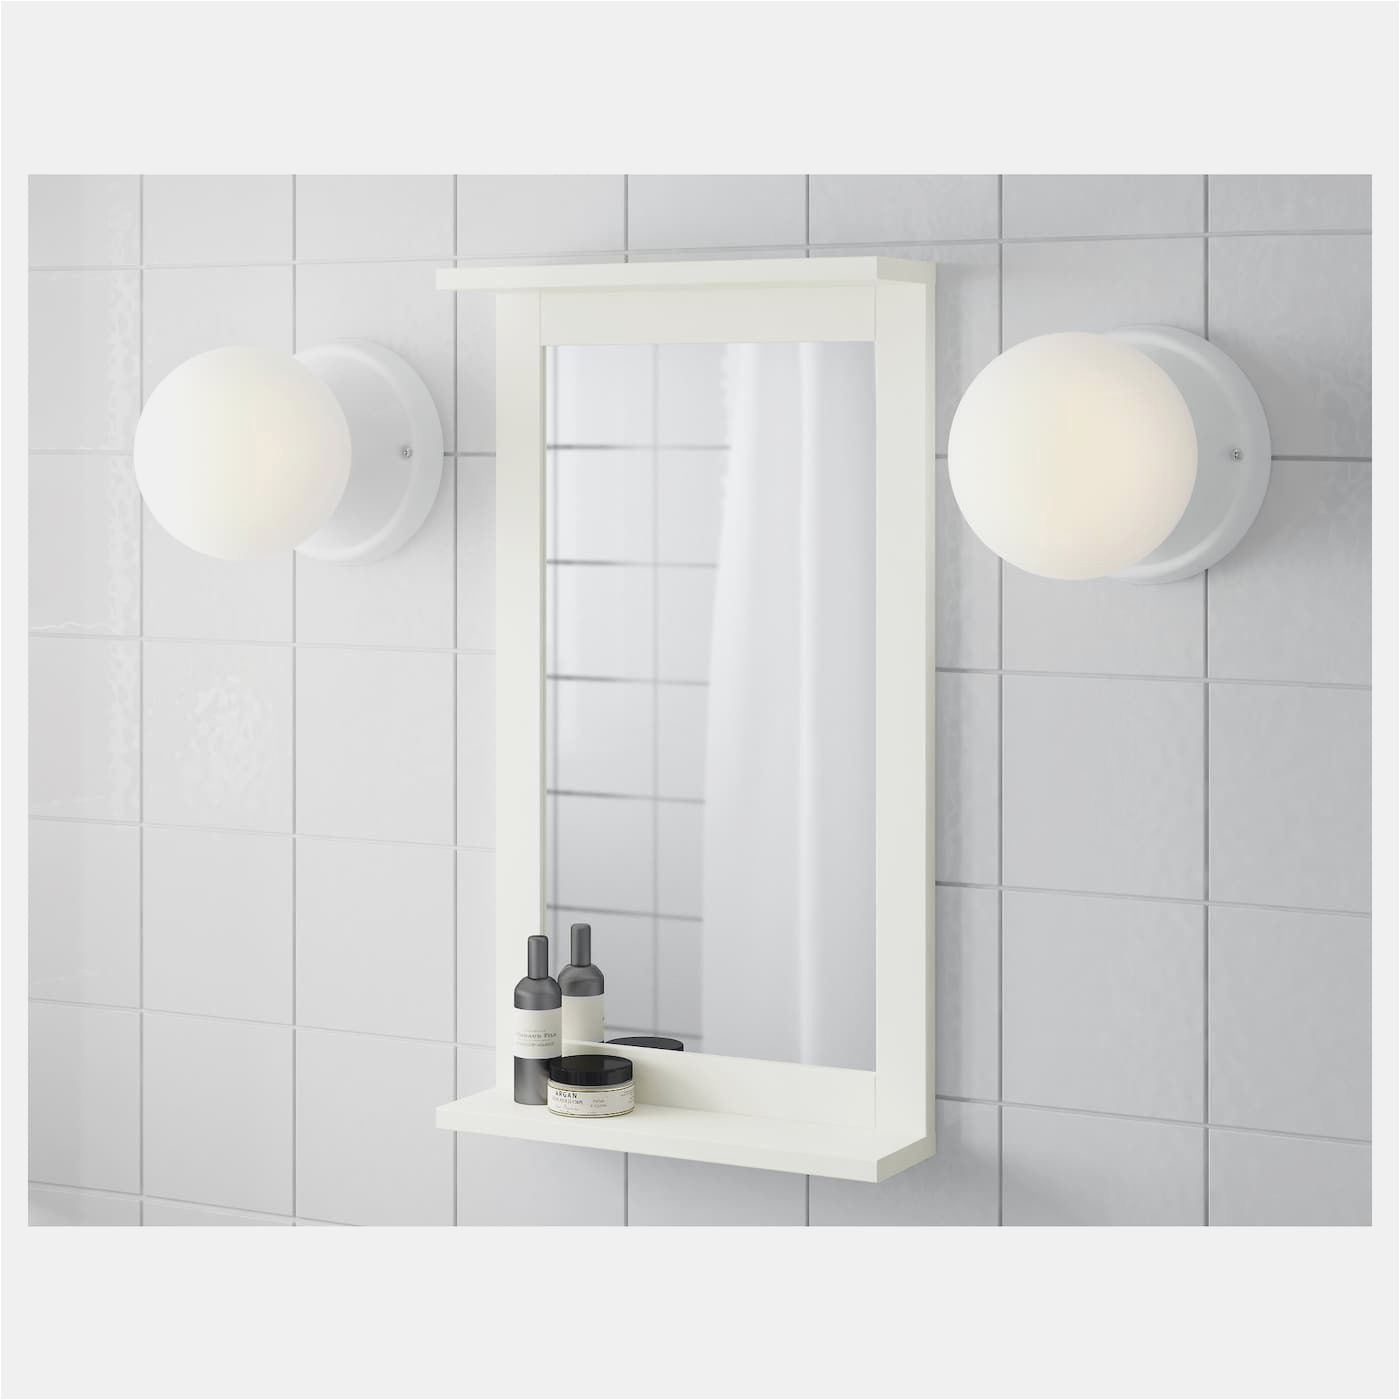 badezimmerspiegel mit ablage frisch silverc285n spiegel mit ablage weis of badezimmerspiegel mit ablage